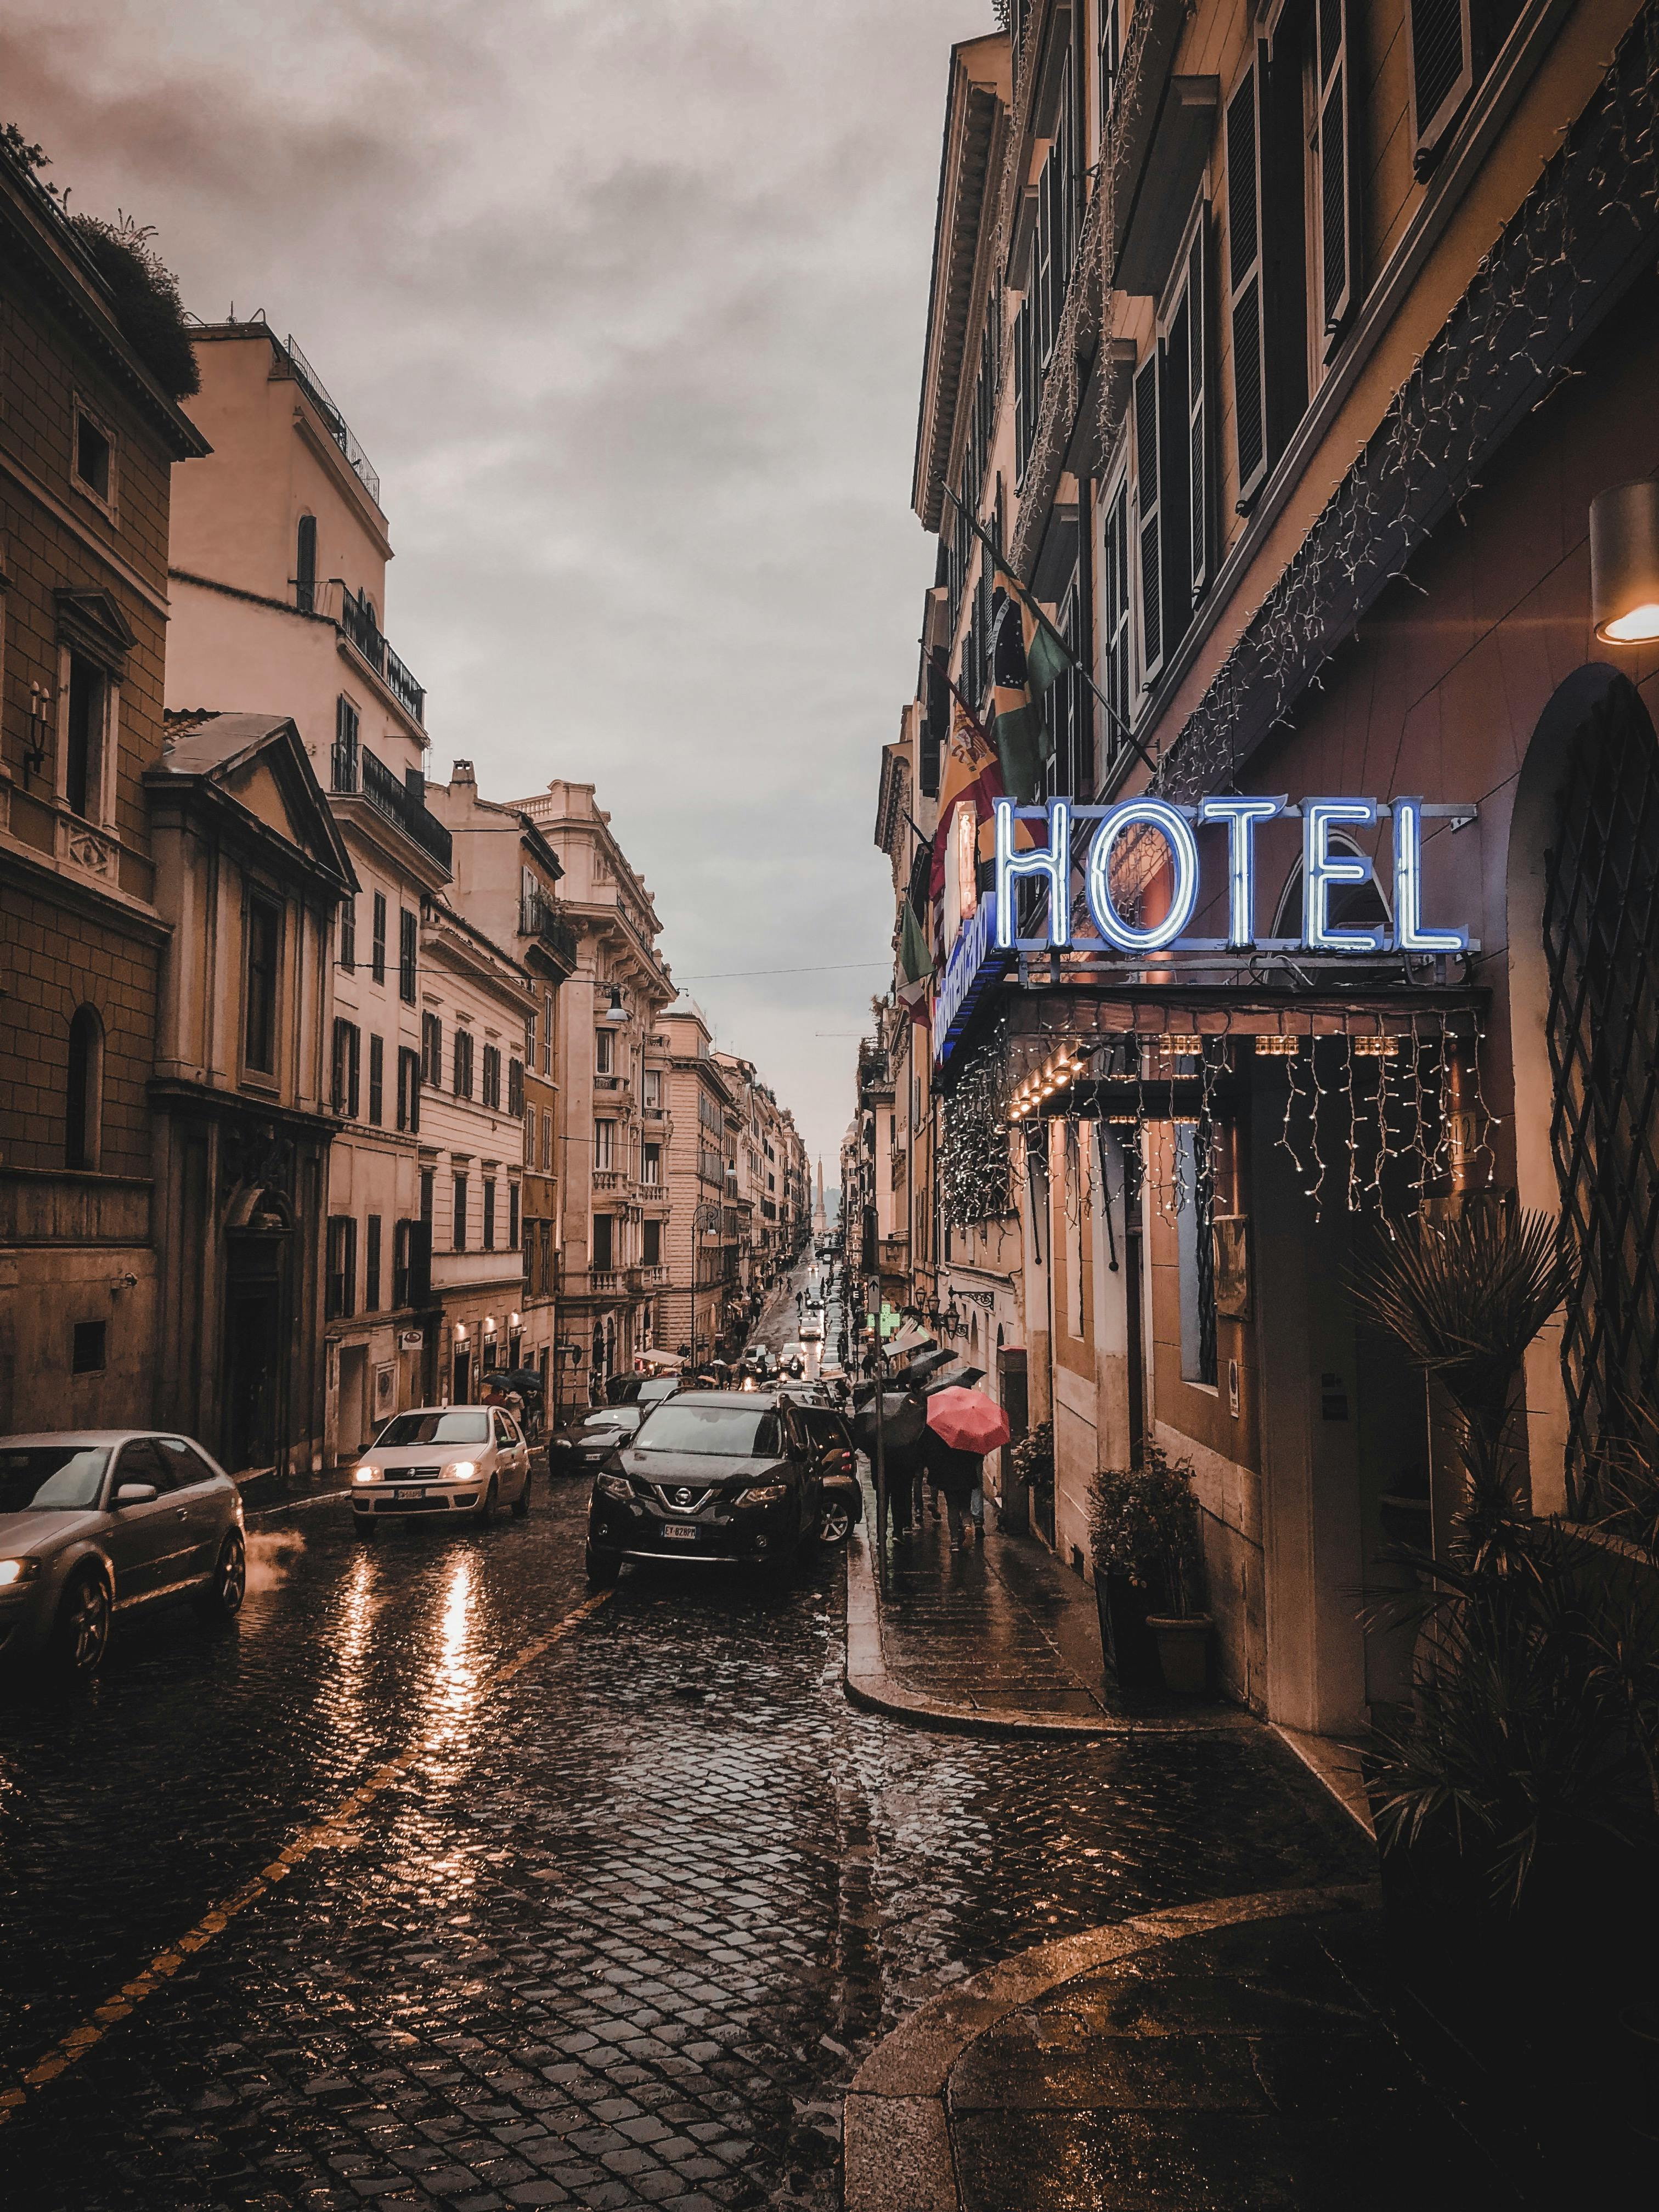 A hotel | Source: Pexels